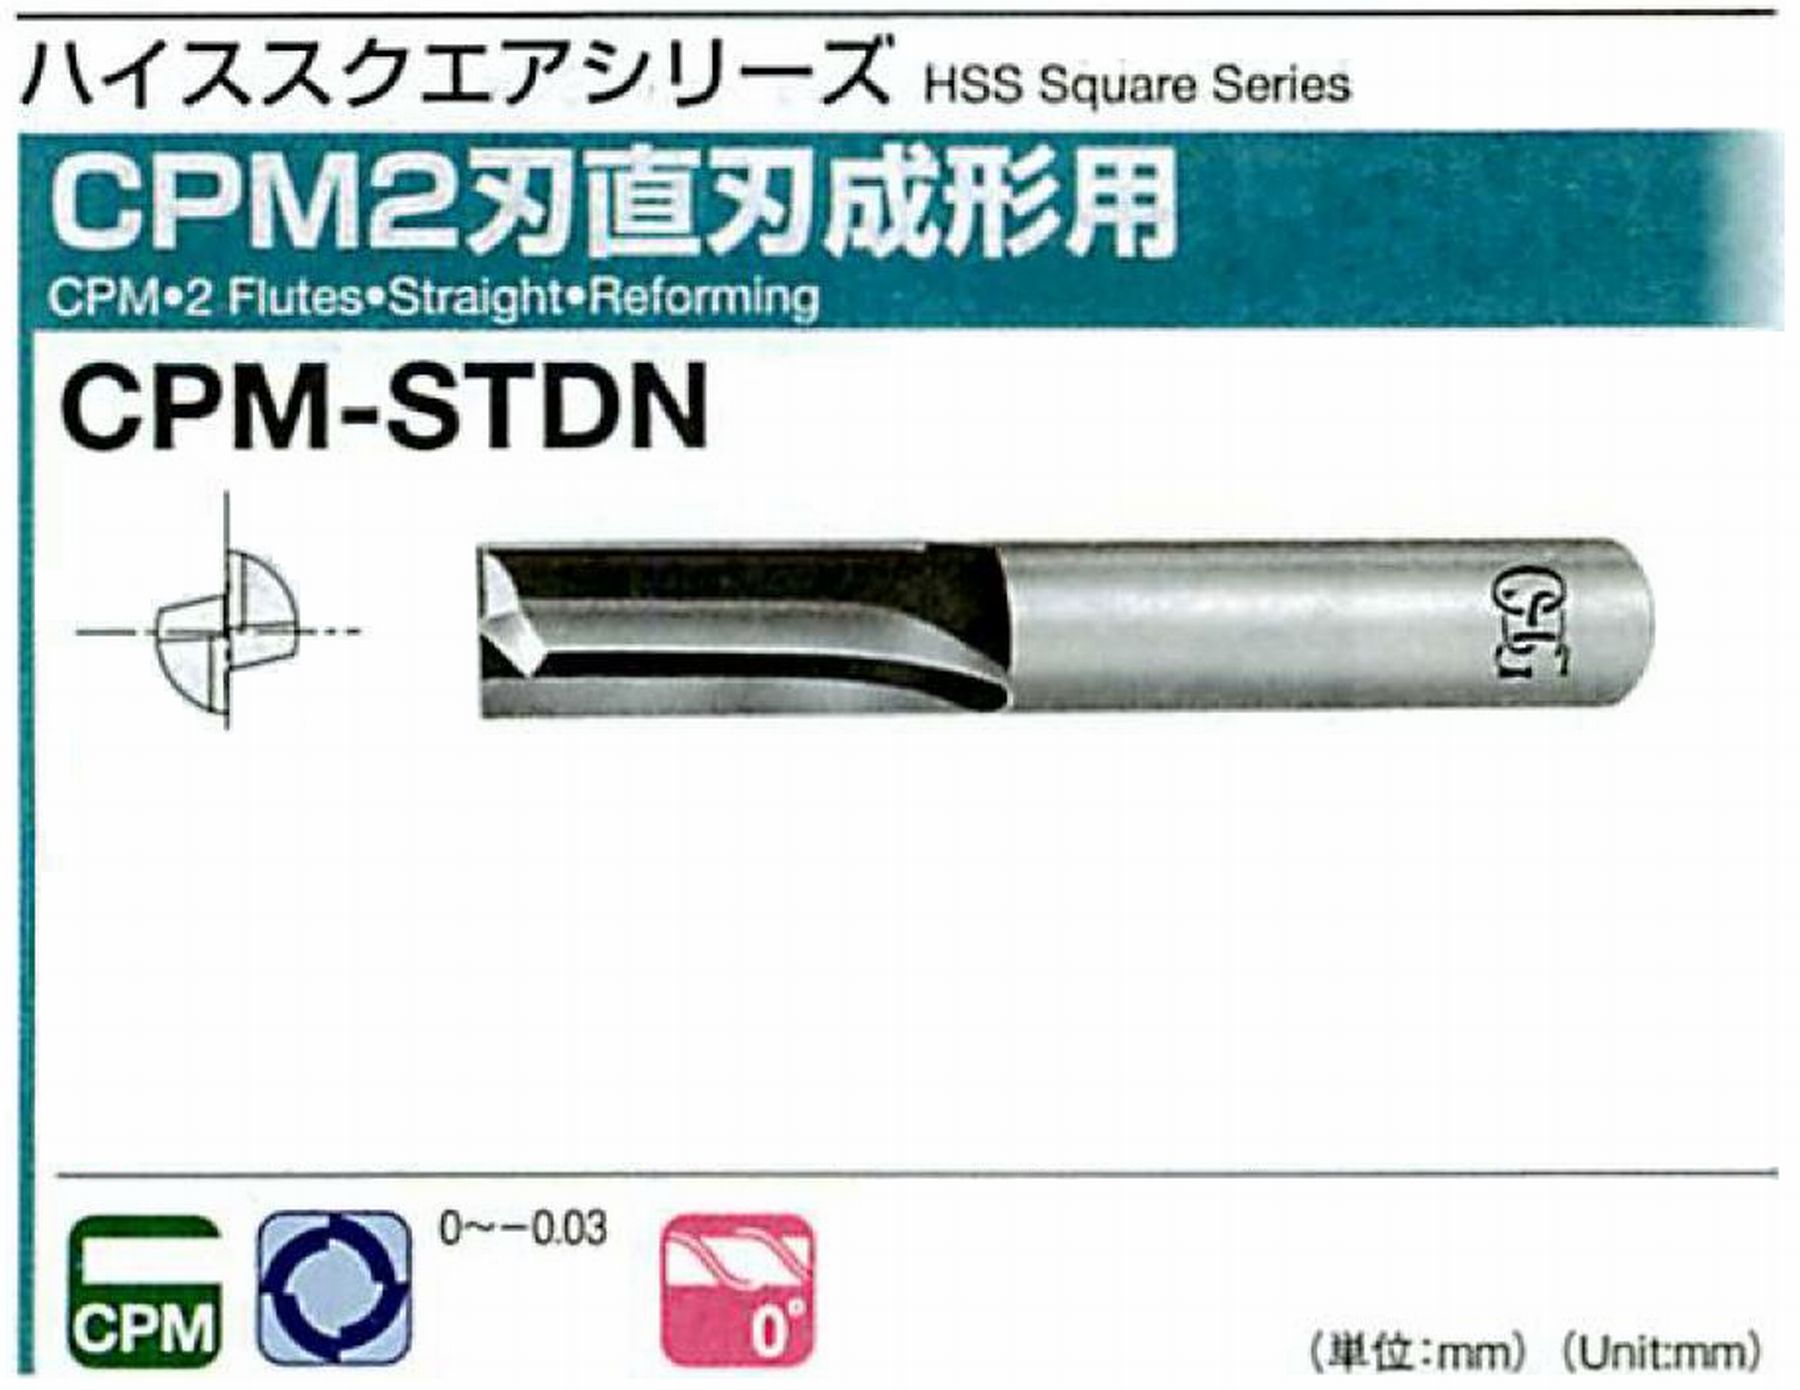 オーエスジー/OSG CPM2刃 直刃成形用 CPM-STDN 外径4.5 全長60 刃長15 シャンク径6mm